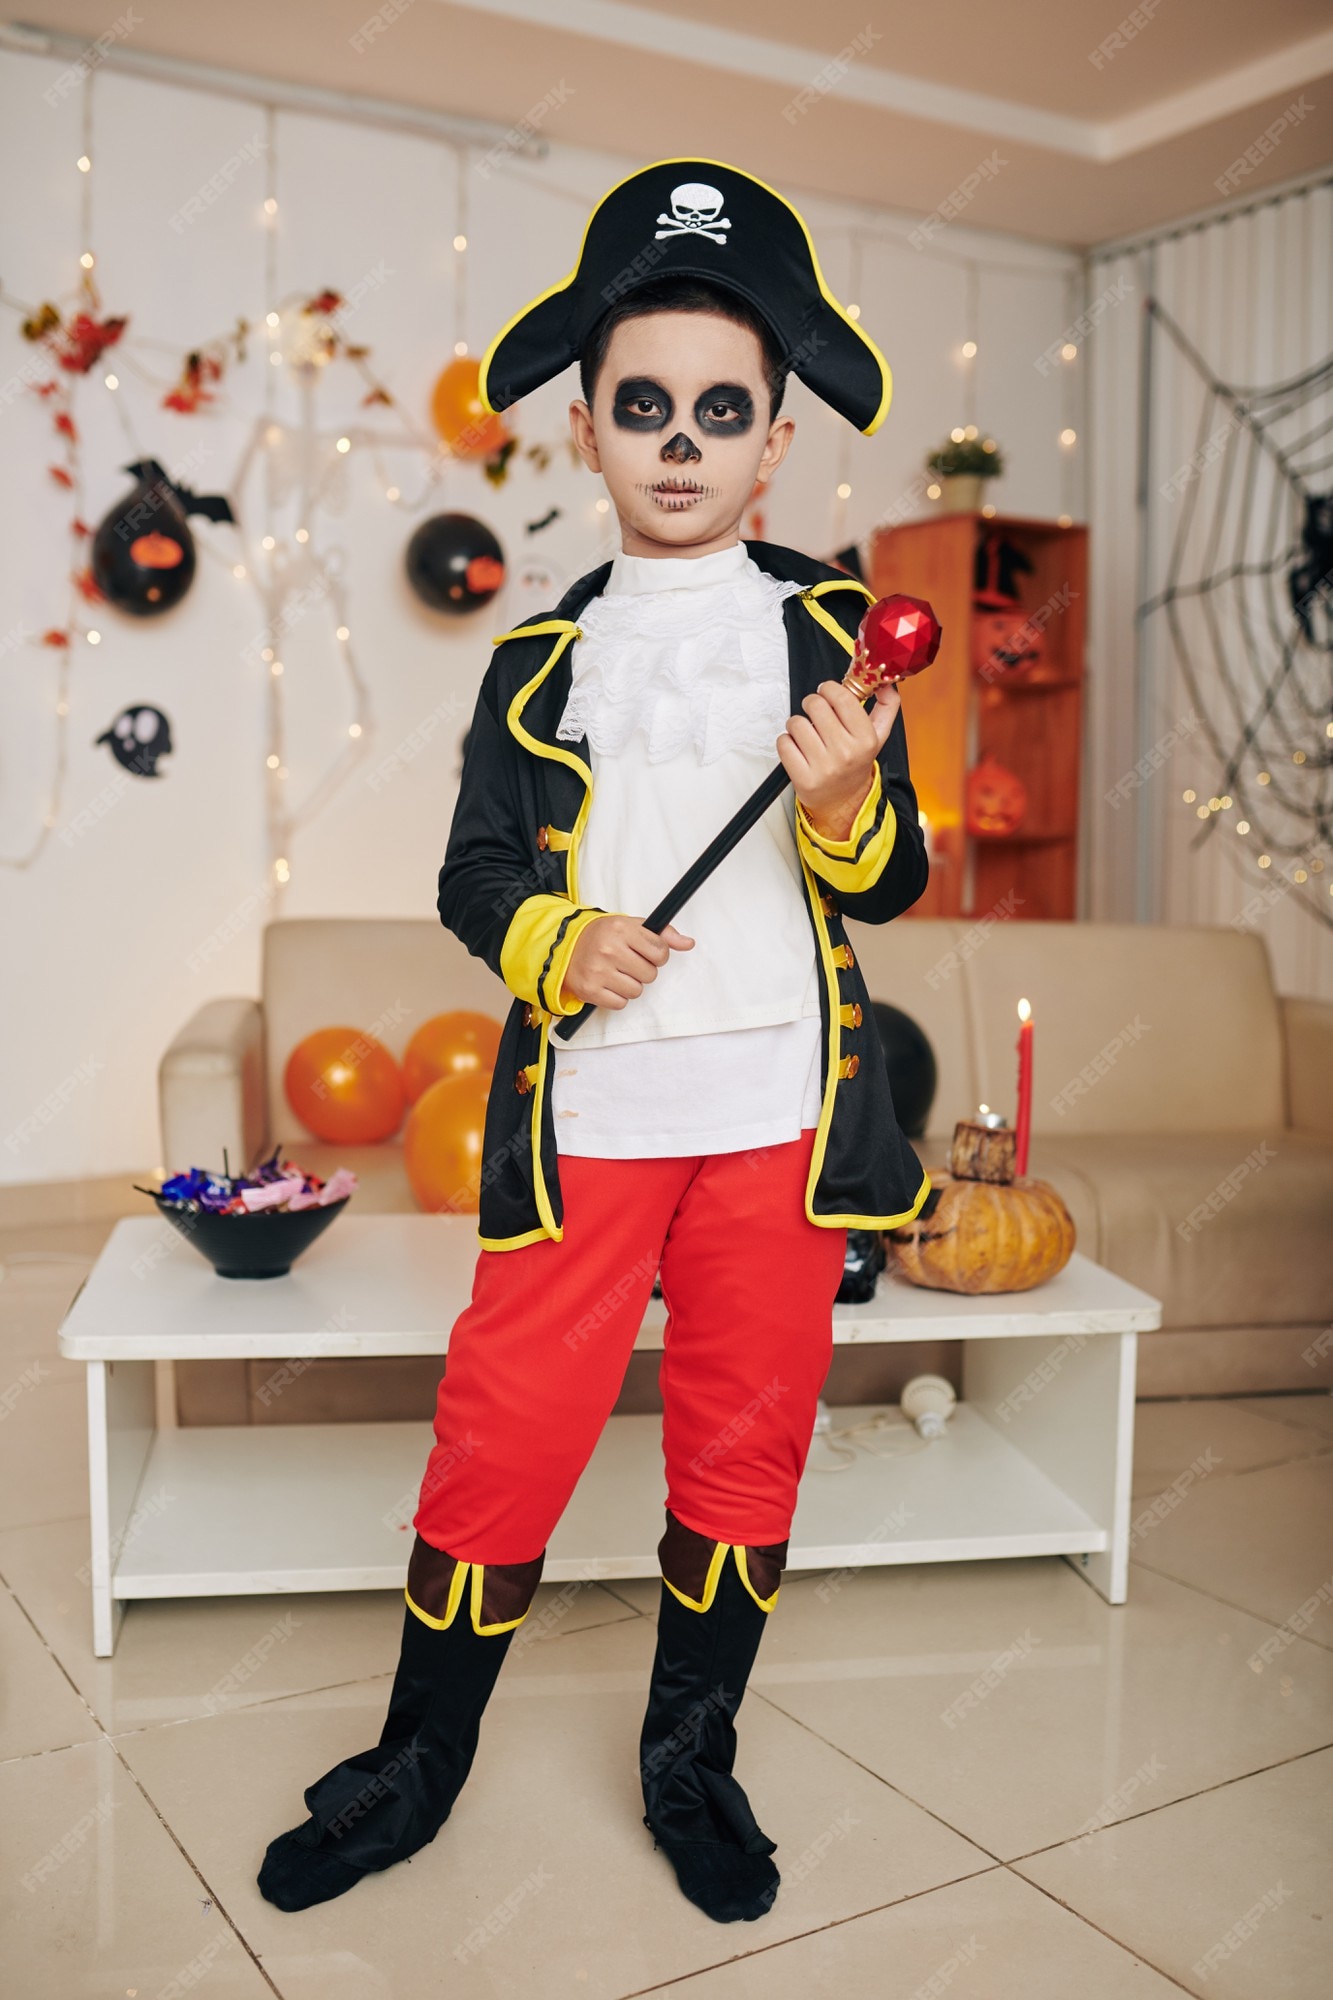 sol Marinero suerte Niño disfrazado de pirata de halloween sosteniendo el cetro cuando está de  pie en la habitación decorada para la fiesta de halloween | Foto Premium